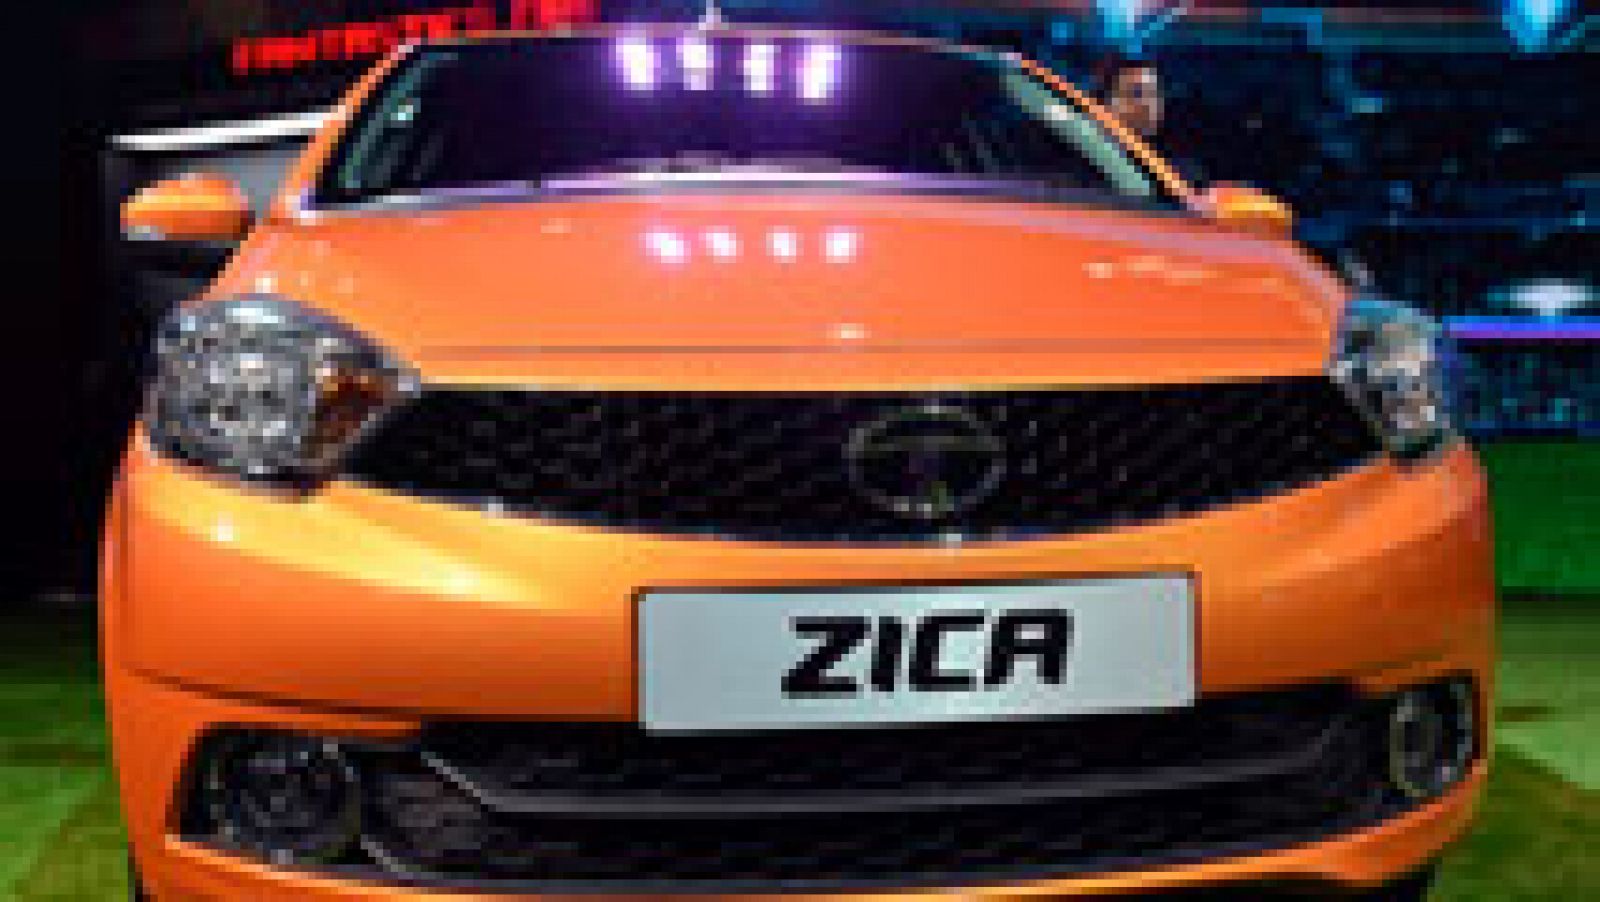 Telediario 1: Retirado el Tata Zica, el último modelo del fabricante de coches indio | RTVE Play